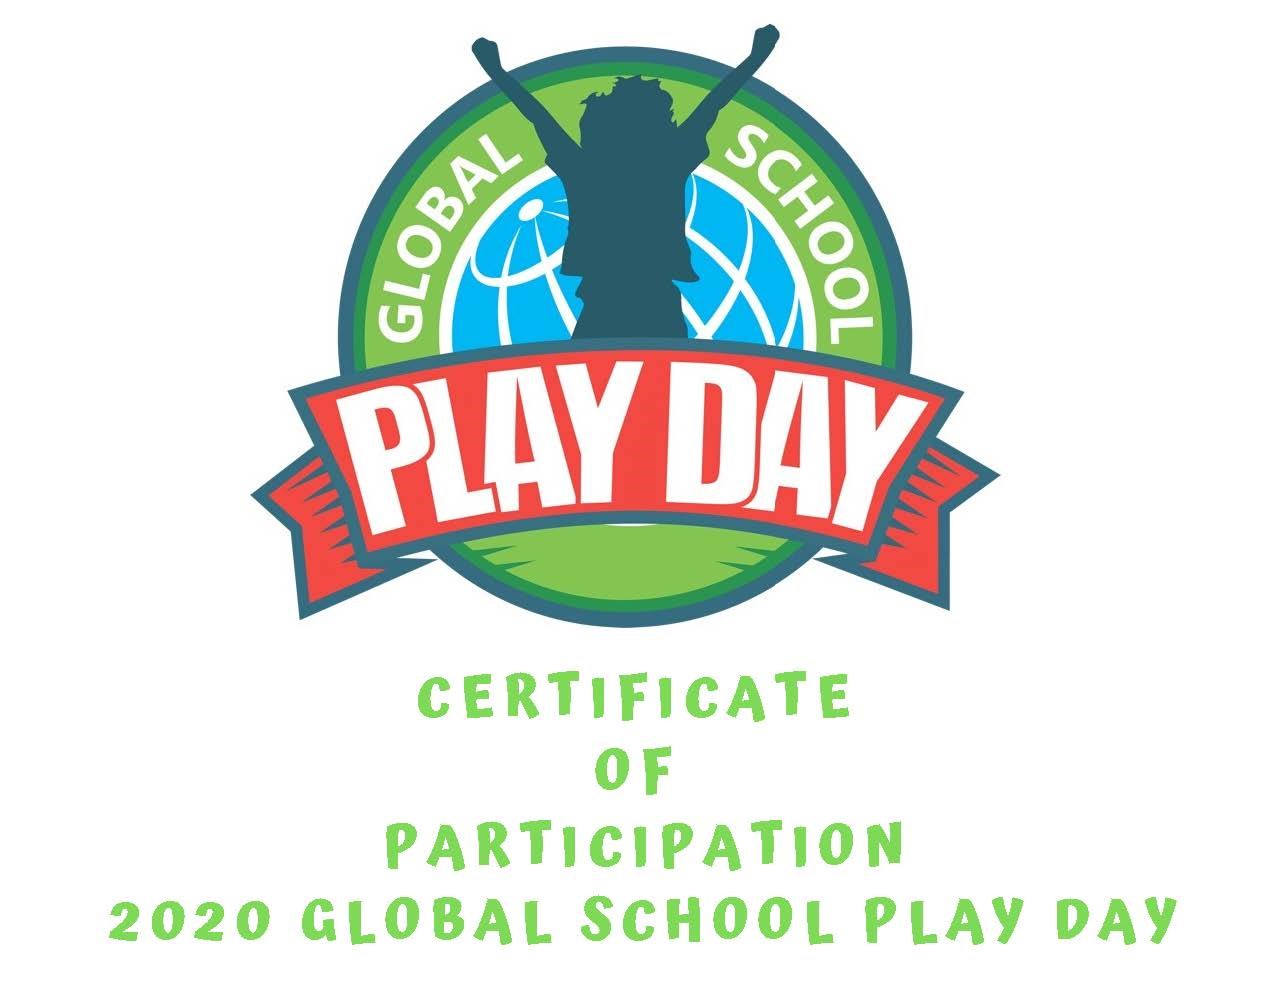 Global School Play Day Certificate 2020.jpg